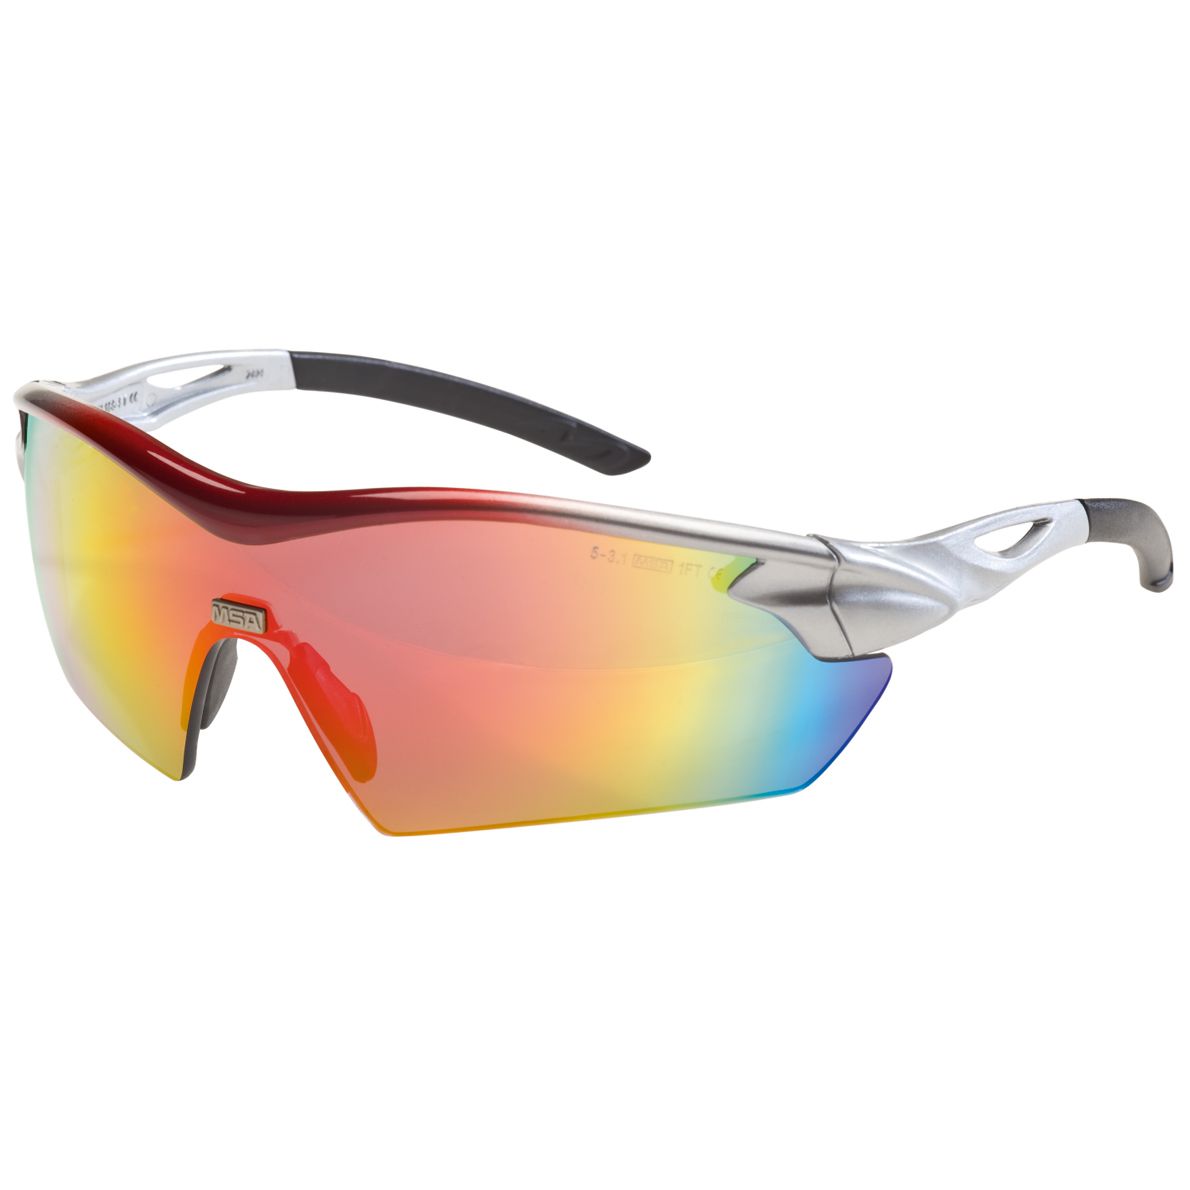 MSA Racer Arbeits- & Militär-Schutzbrille - EN 166 & MIL-V-43511C - Schießbrille + Brillenbeutel - Schwarz/Regenbogen